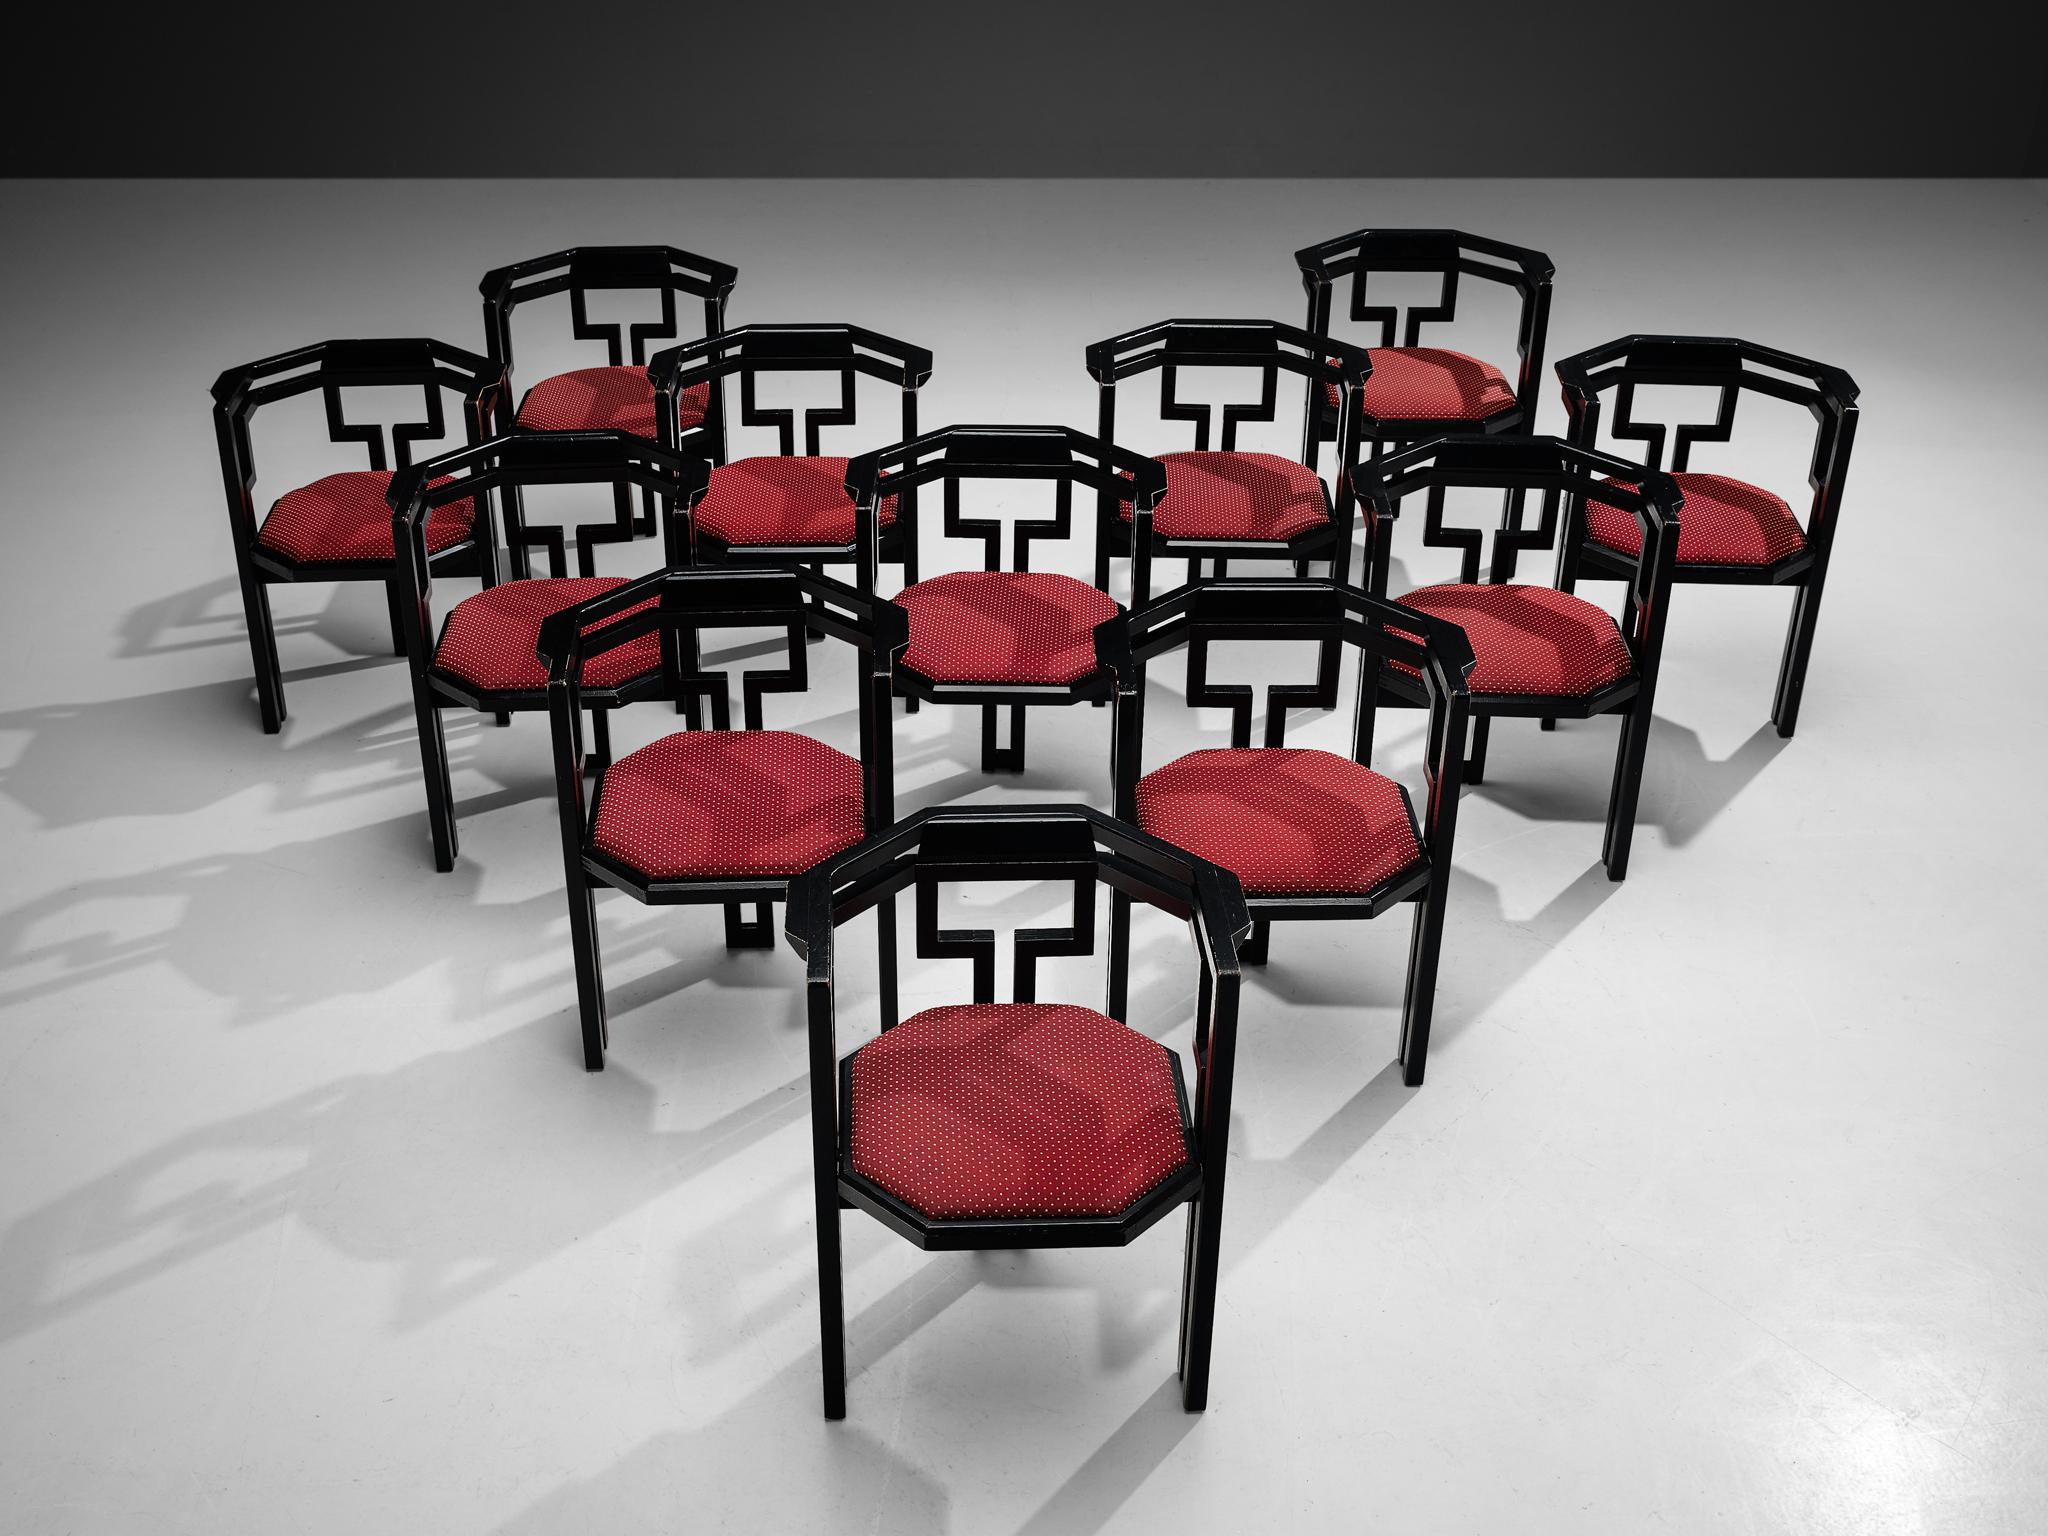 Satz von zwölf Esszimmerstühlen, Eiche schwarz lackiert, Stoff, Italien, 1970er Jahre.

Hervorragender Satz von zwölf geometrischen italienischen Esszimmerstühlen. Diese Stühle verbinden ein skulpturales Design, das einfach, aber sehr stark in den